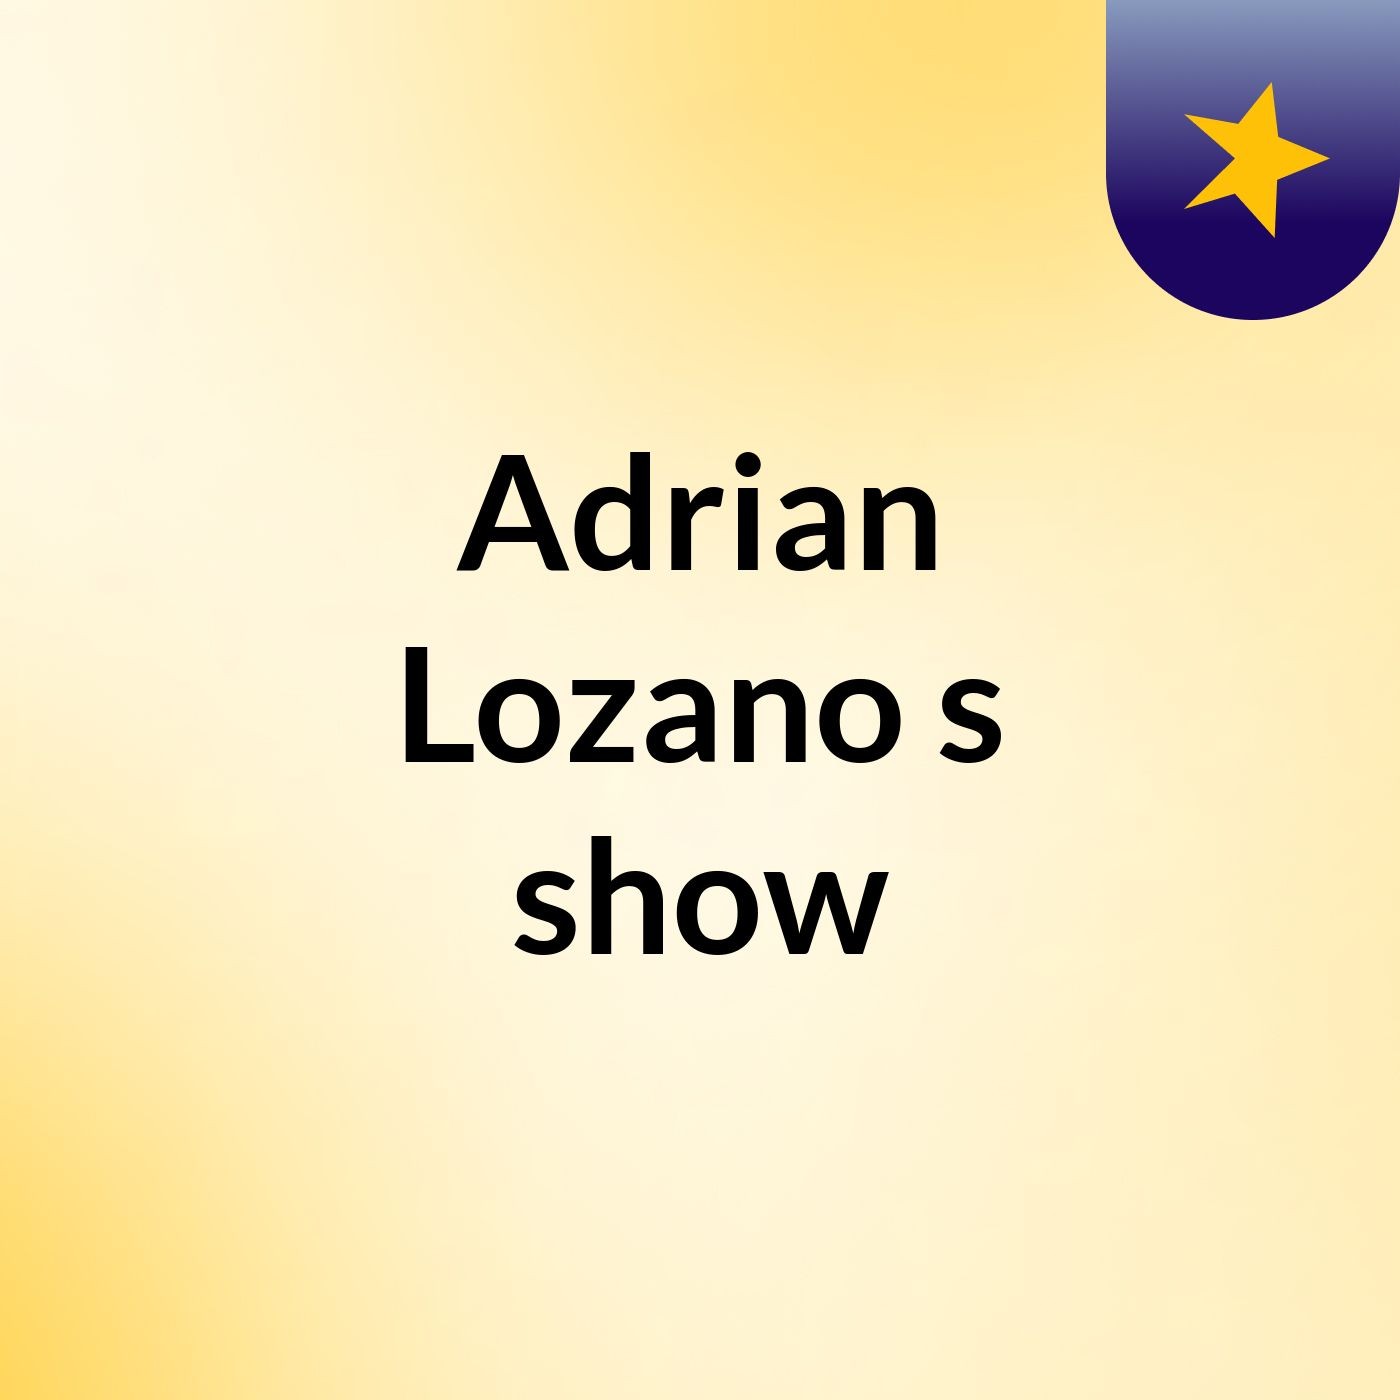 Adrian Lozano's show